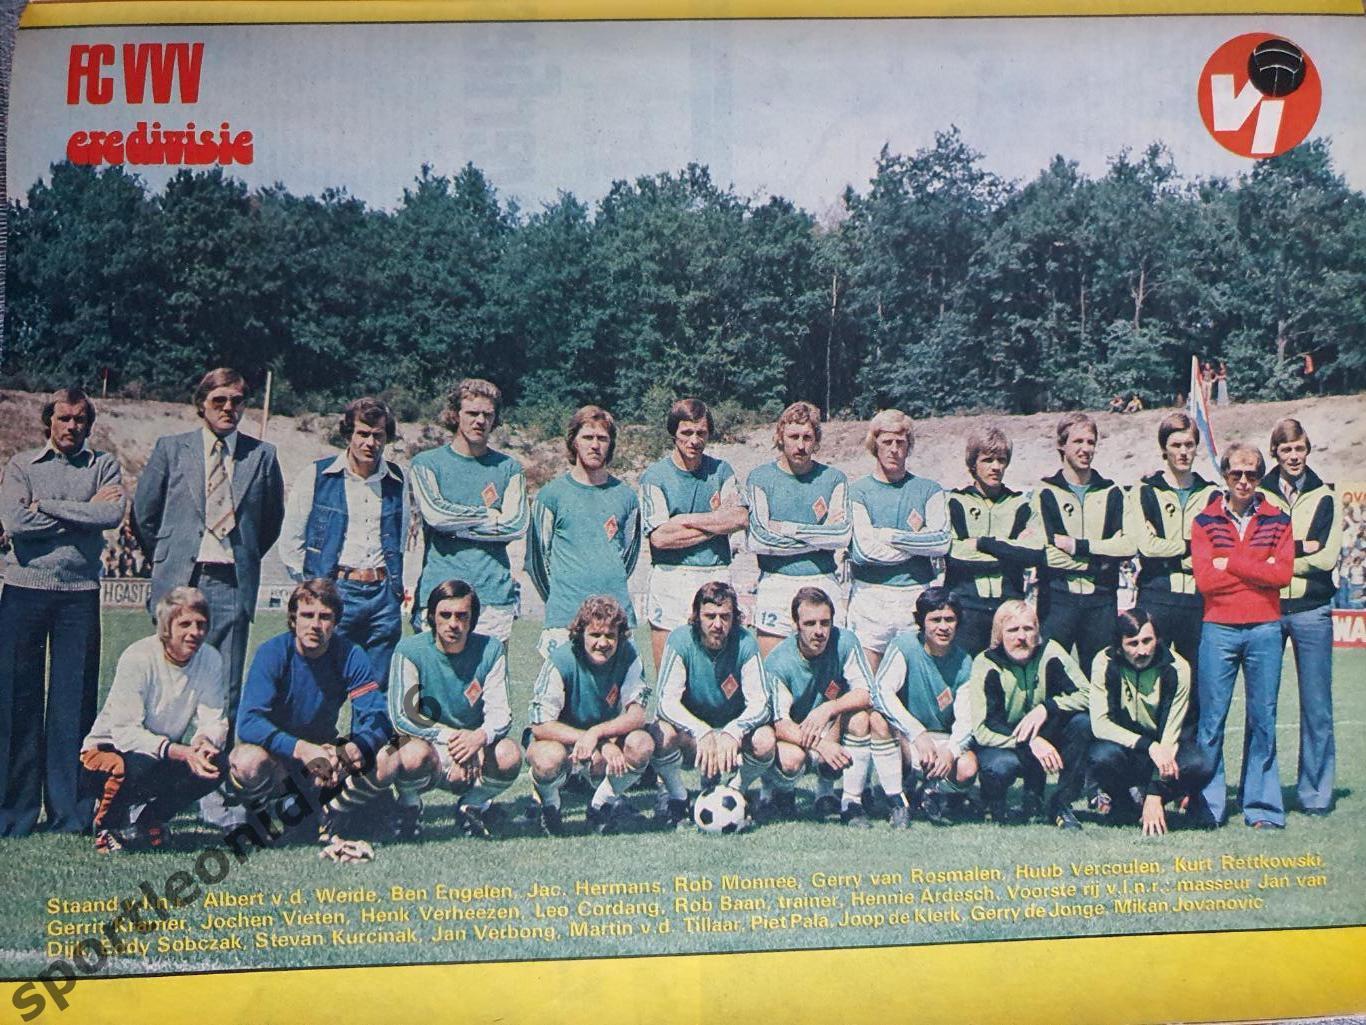 Voetbal International 1977 51 выпуск годовая подписка .2 5